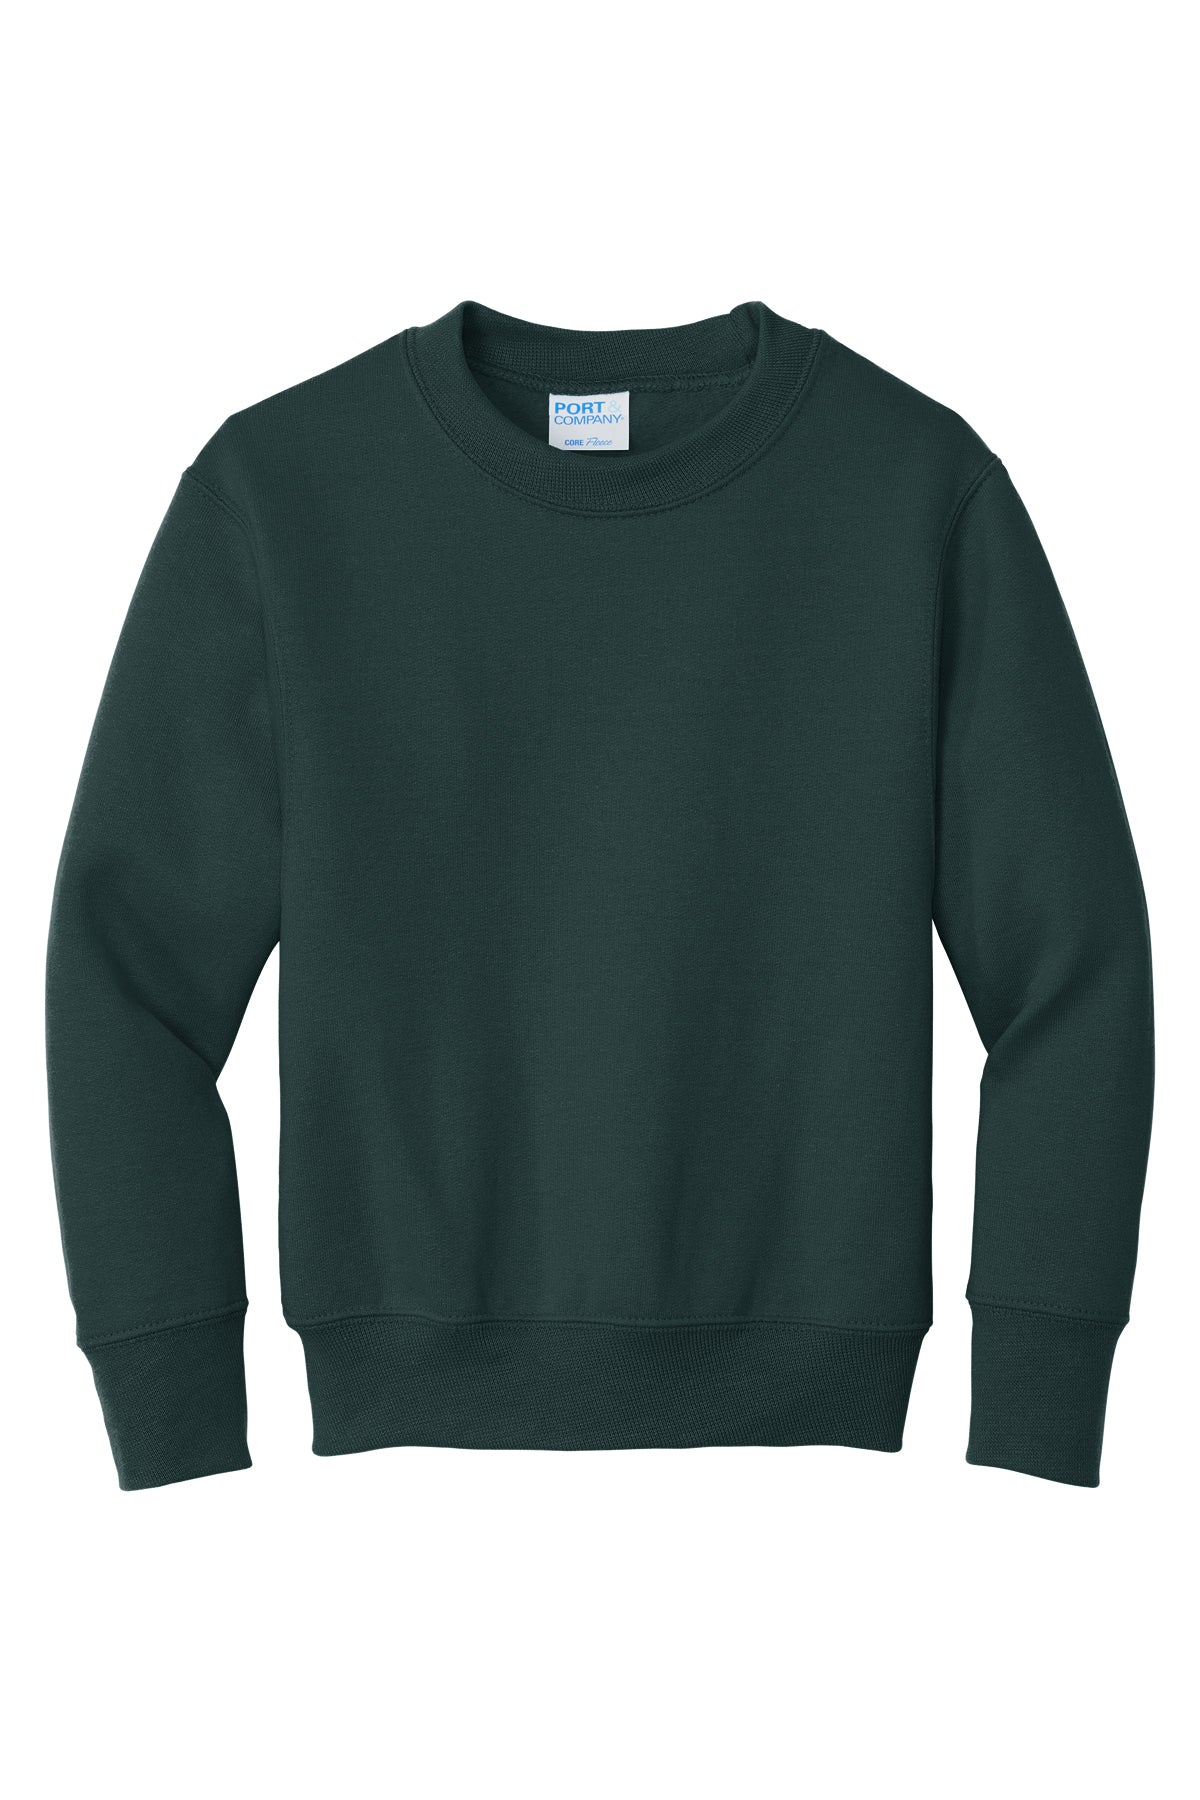 PC90Y Port & Company® Youth Core Fleece Crewneck Sweatshirt